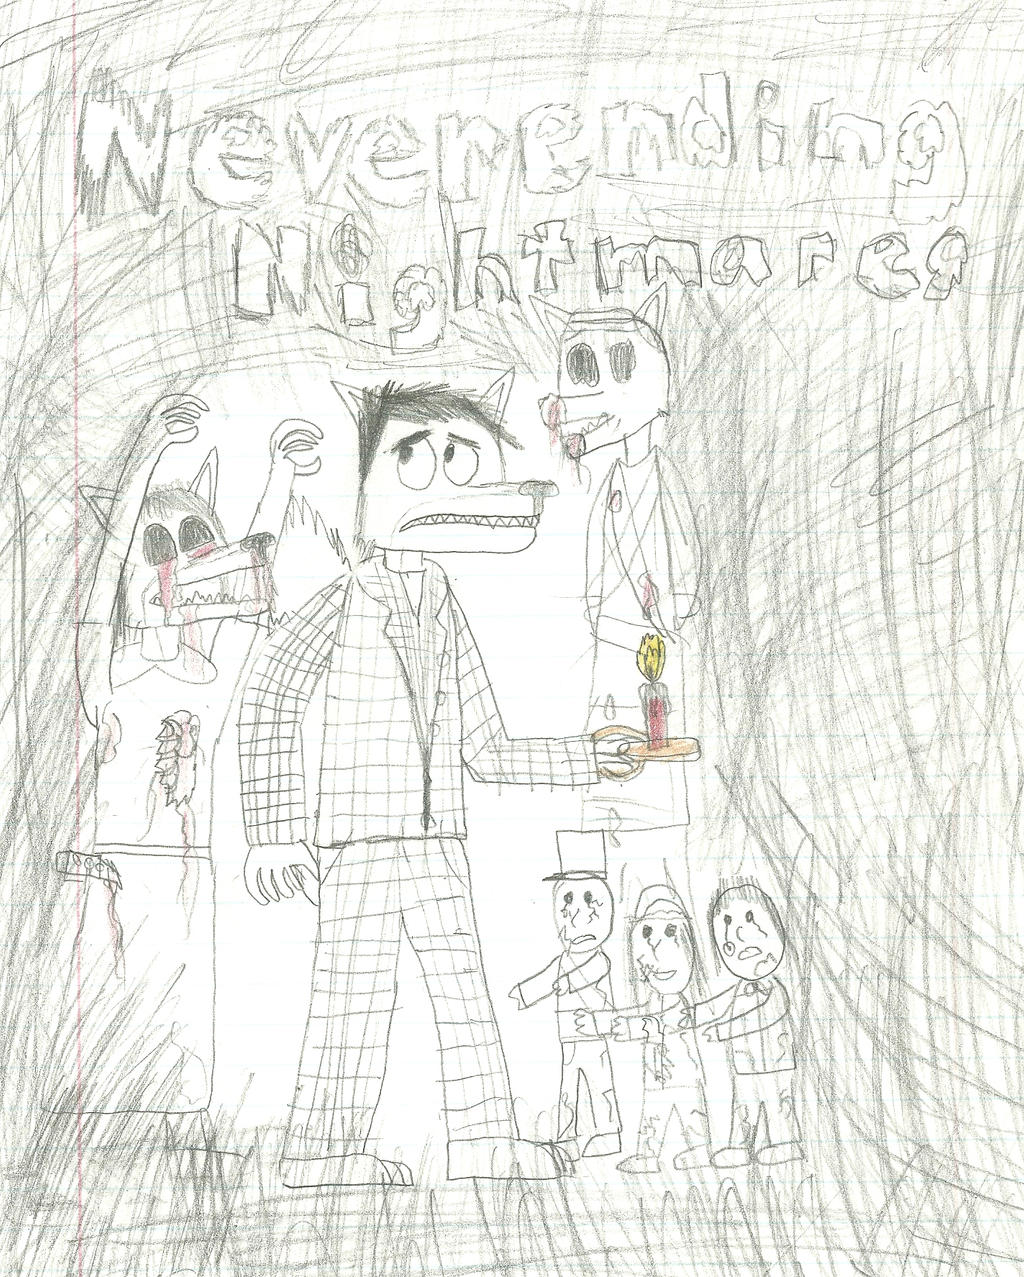 Neverending nightmares drawing. by ZachMFKAttack on DeviantArt